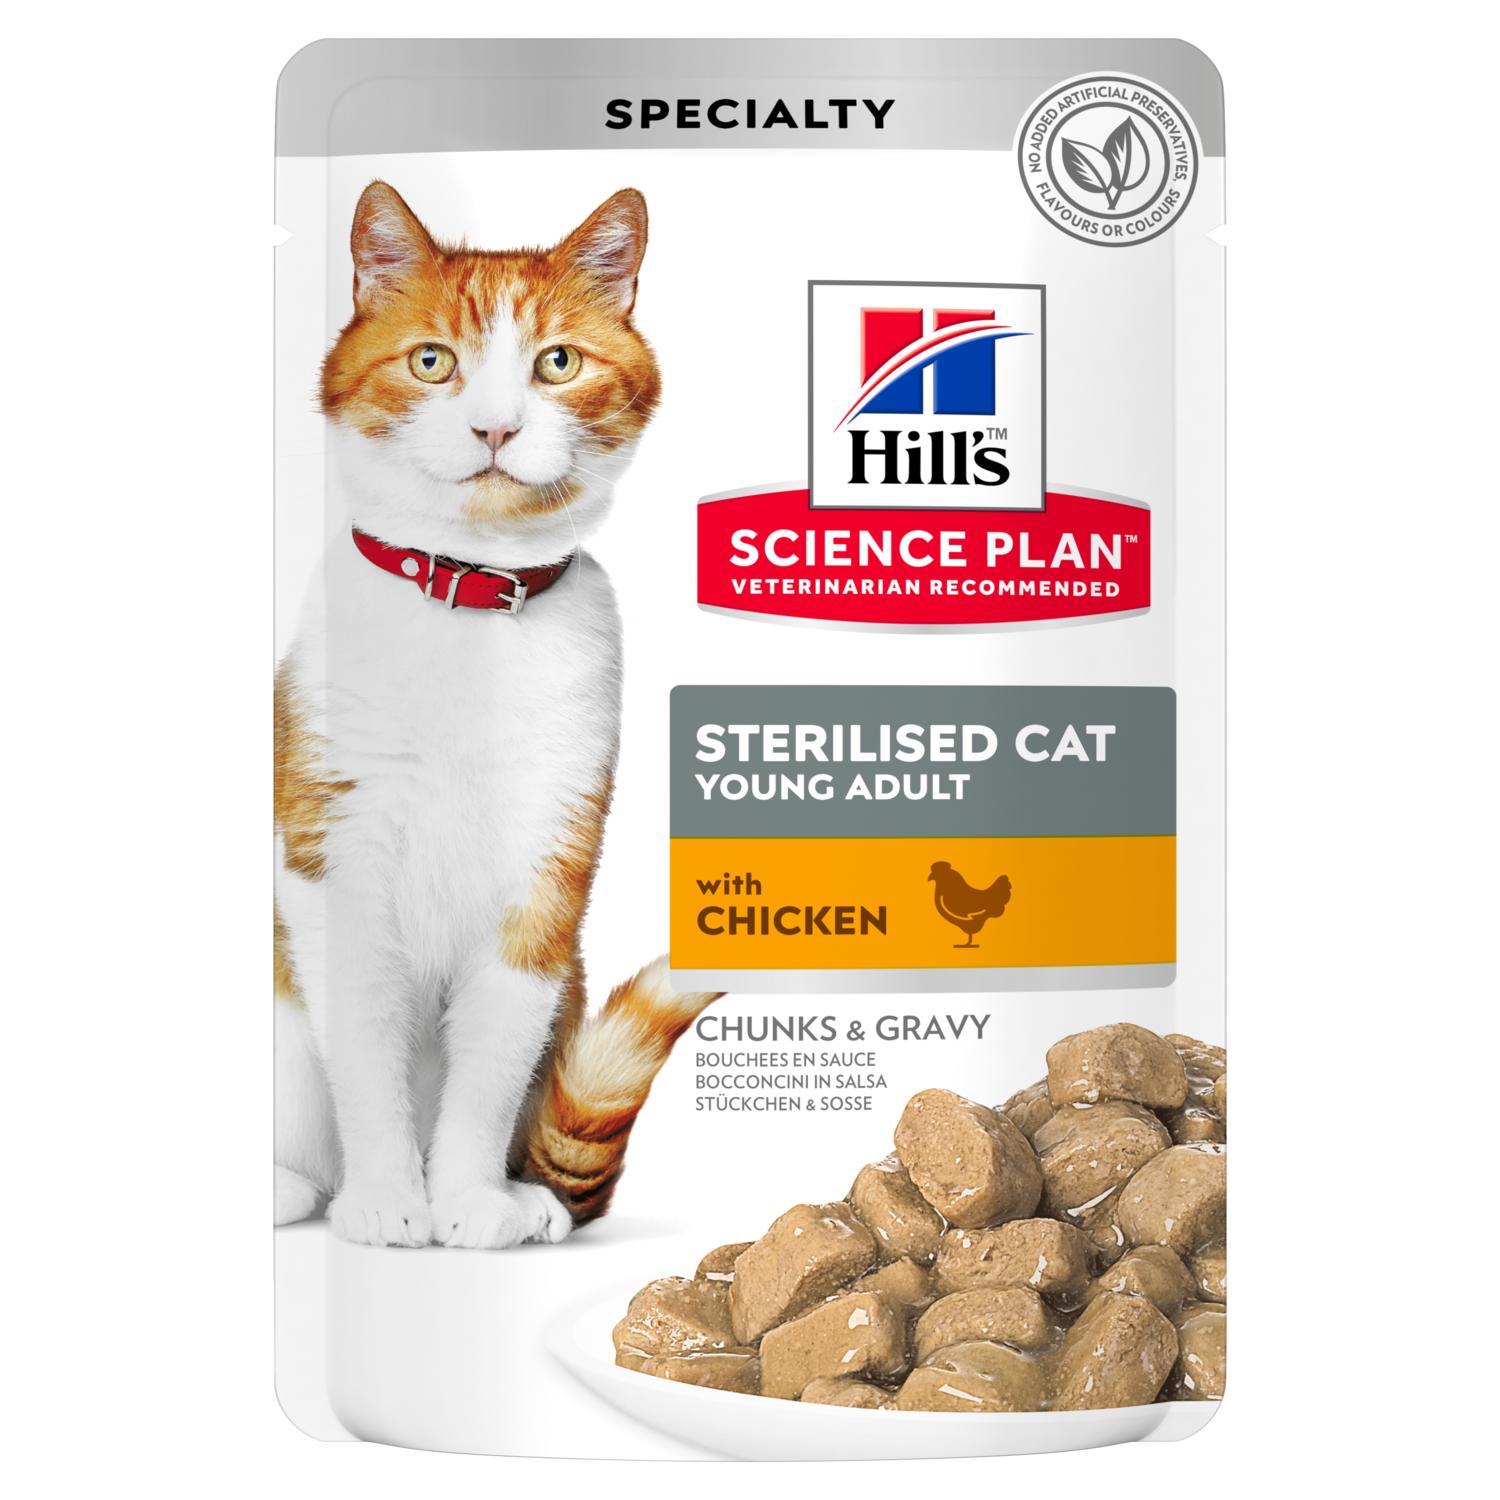 Корм для аппетита для кошки. Хилс для котов стерилизованных корм Хиллс. Хиллс пауч для кошек. Хиллс корм для кошек Эдалт. Хиллс влажный корм для кошек.